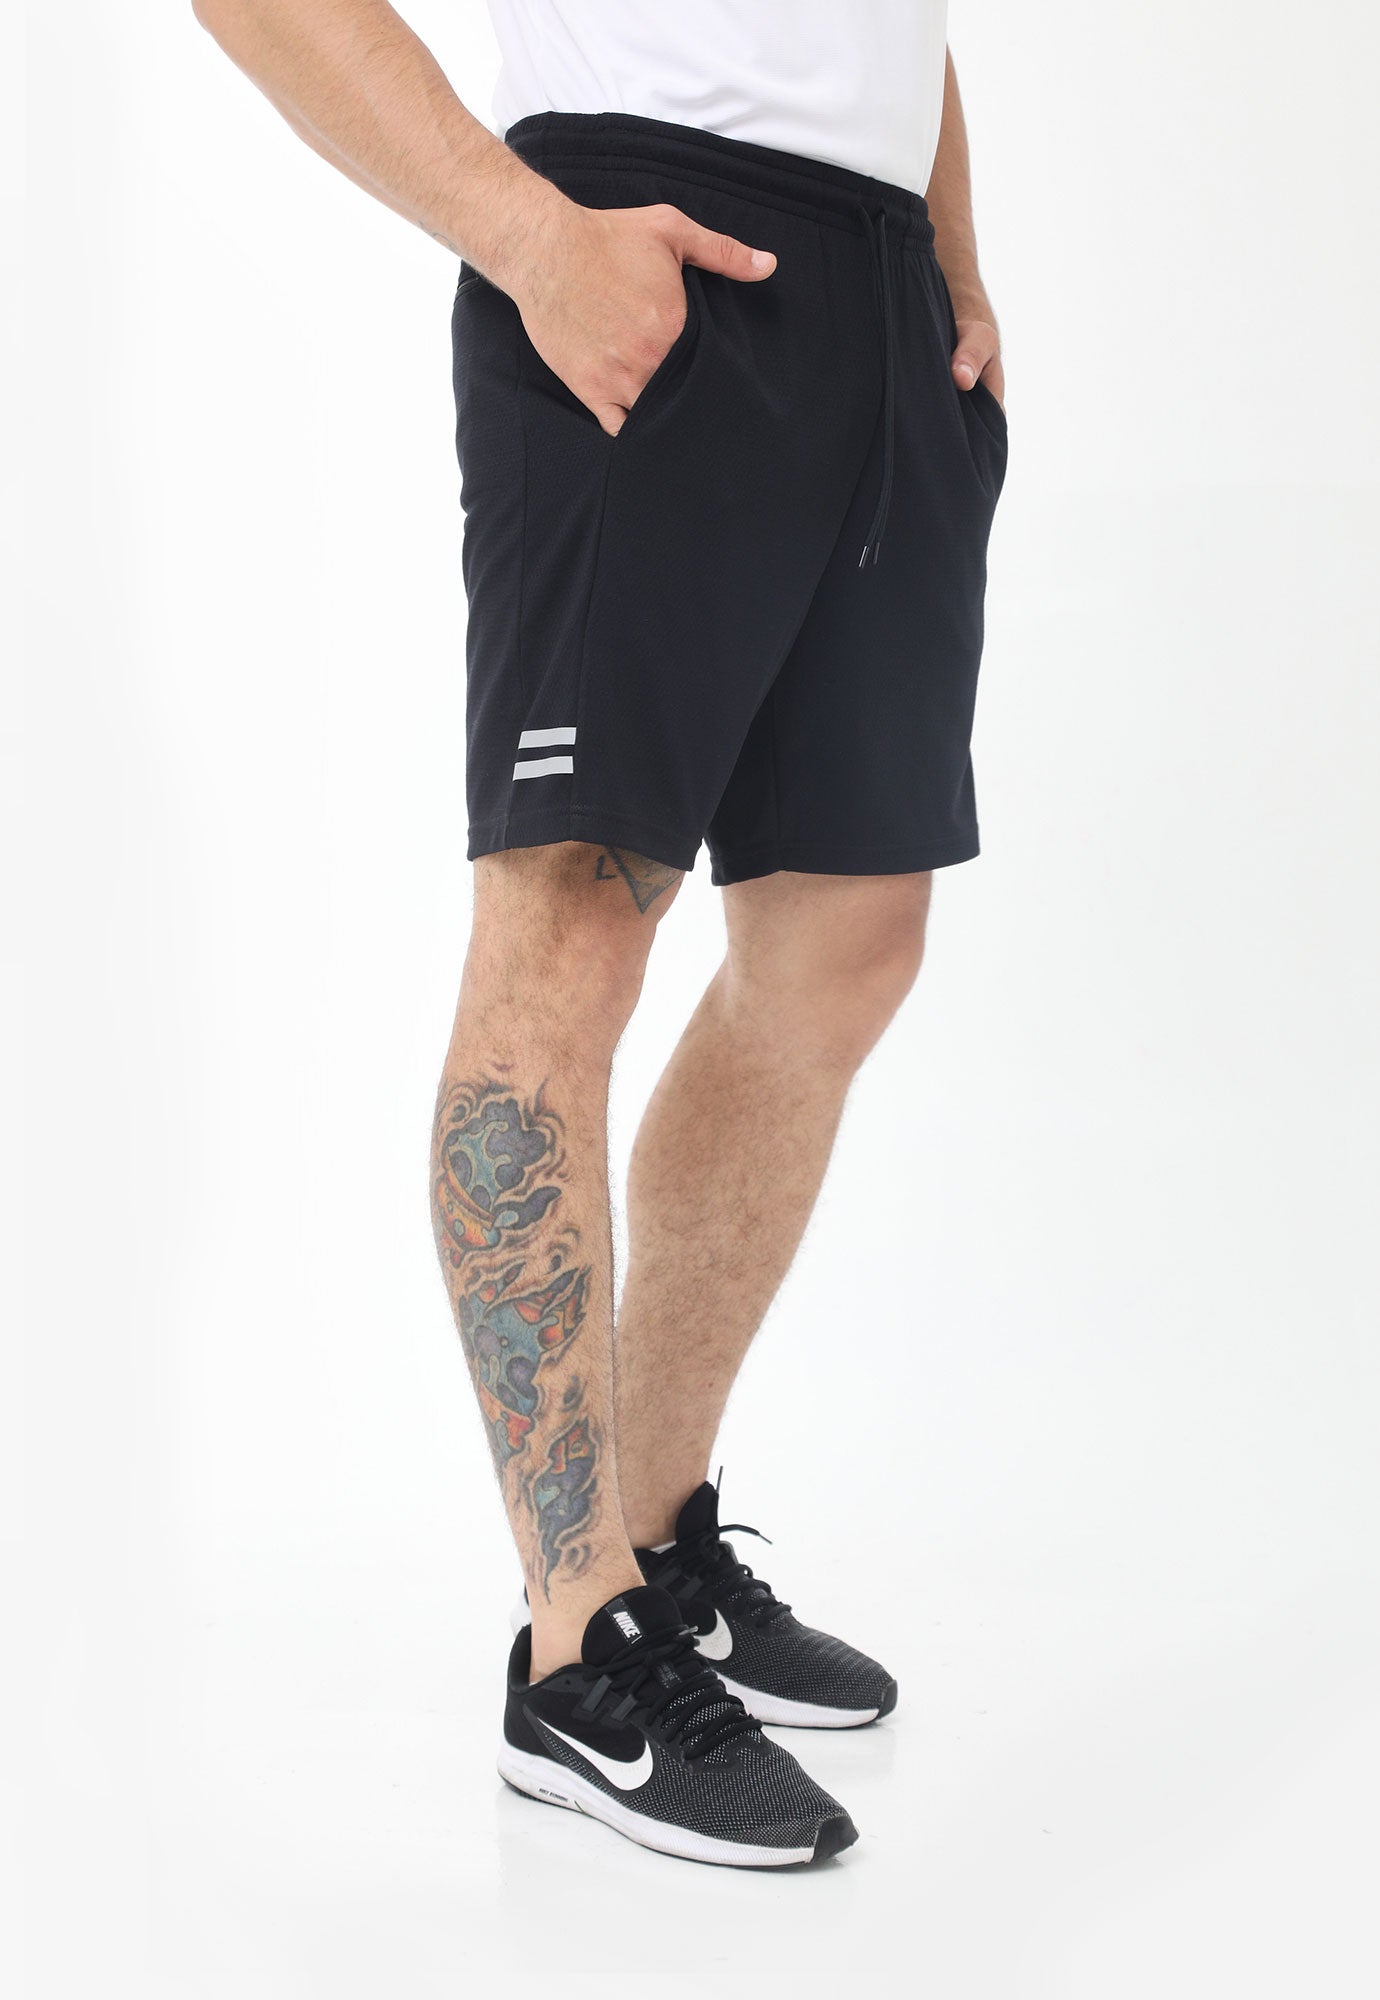 Pantaloneta deportiva negra fondo entero, bolsillos laterales y bolsillo en posterior con cierre para hombre